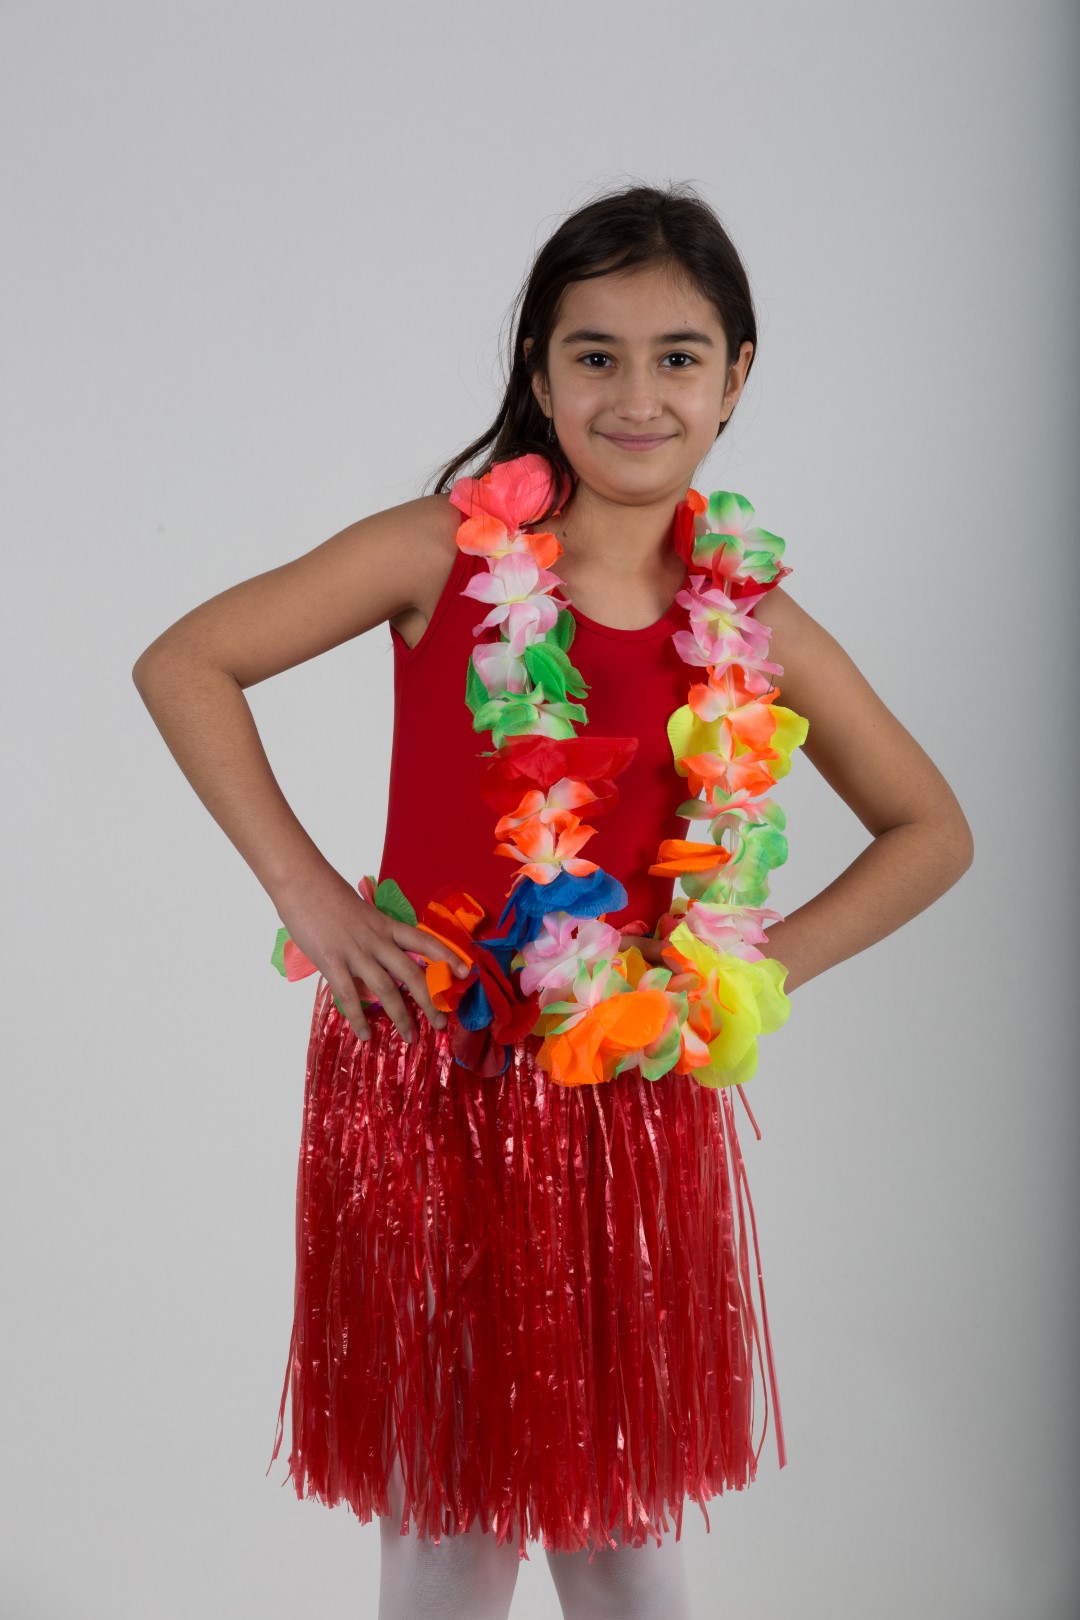 Çocuk Hawaii Kız Kostümü